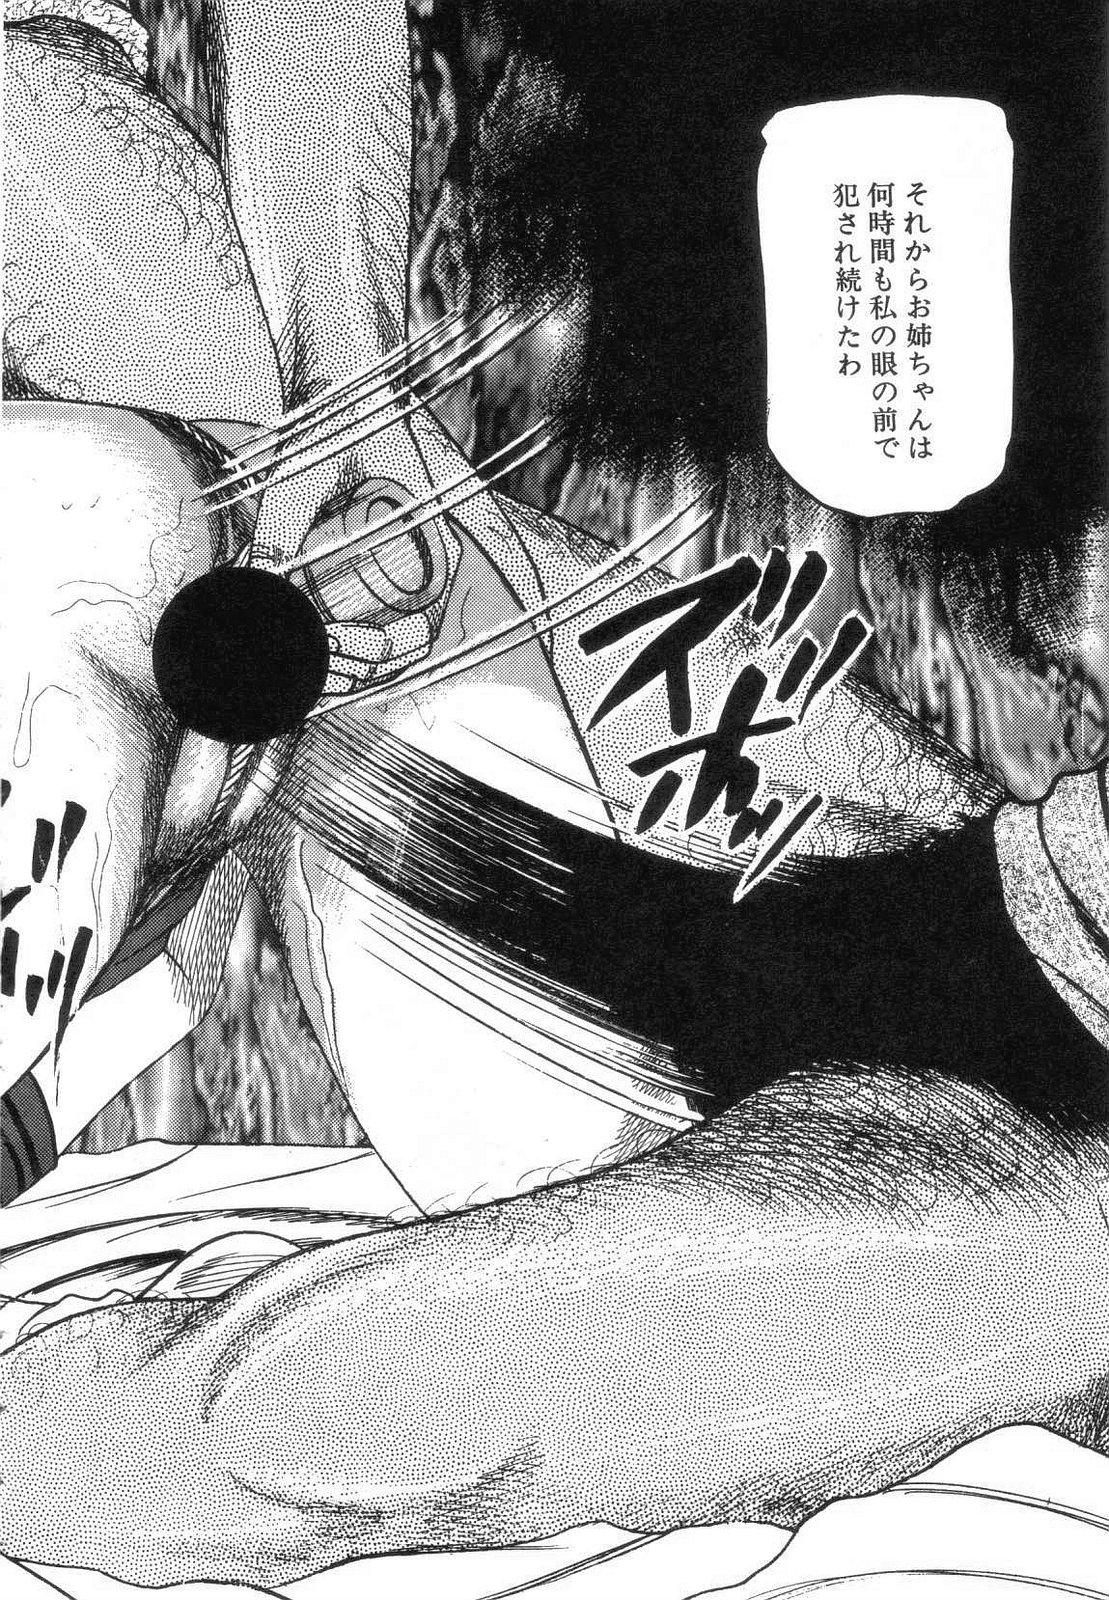 [Sanjou Tomomi] Shiro no Mokushiroku Vol. 7 - Shiiku Ningyou Erika no Shou 191